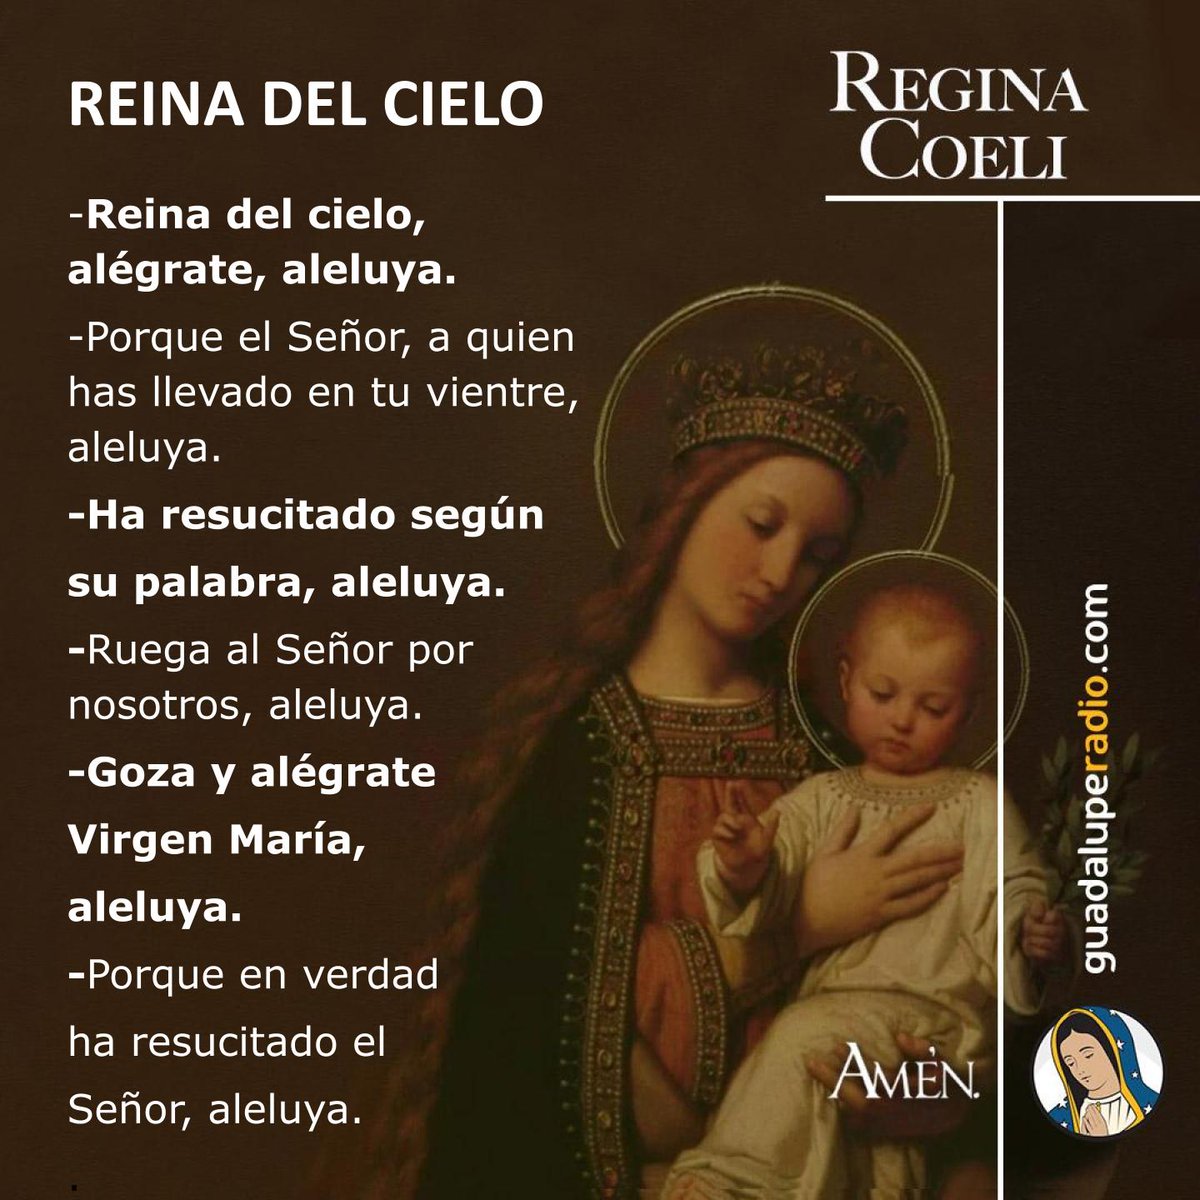 ¡Alégrate, María, el Señor resucitó!
#ReginaCoeli
#GuadalupeRadio